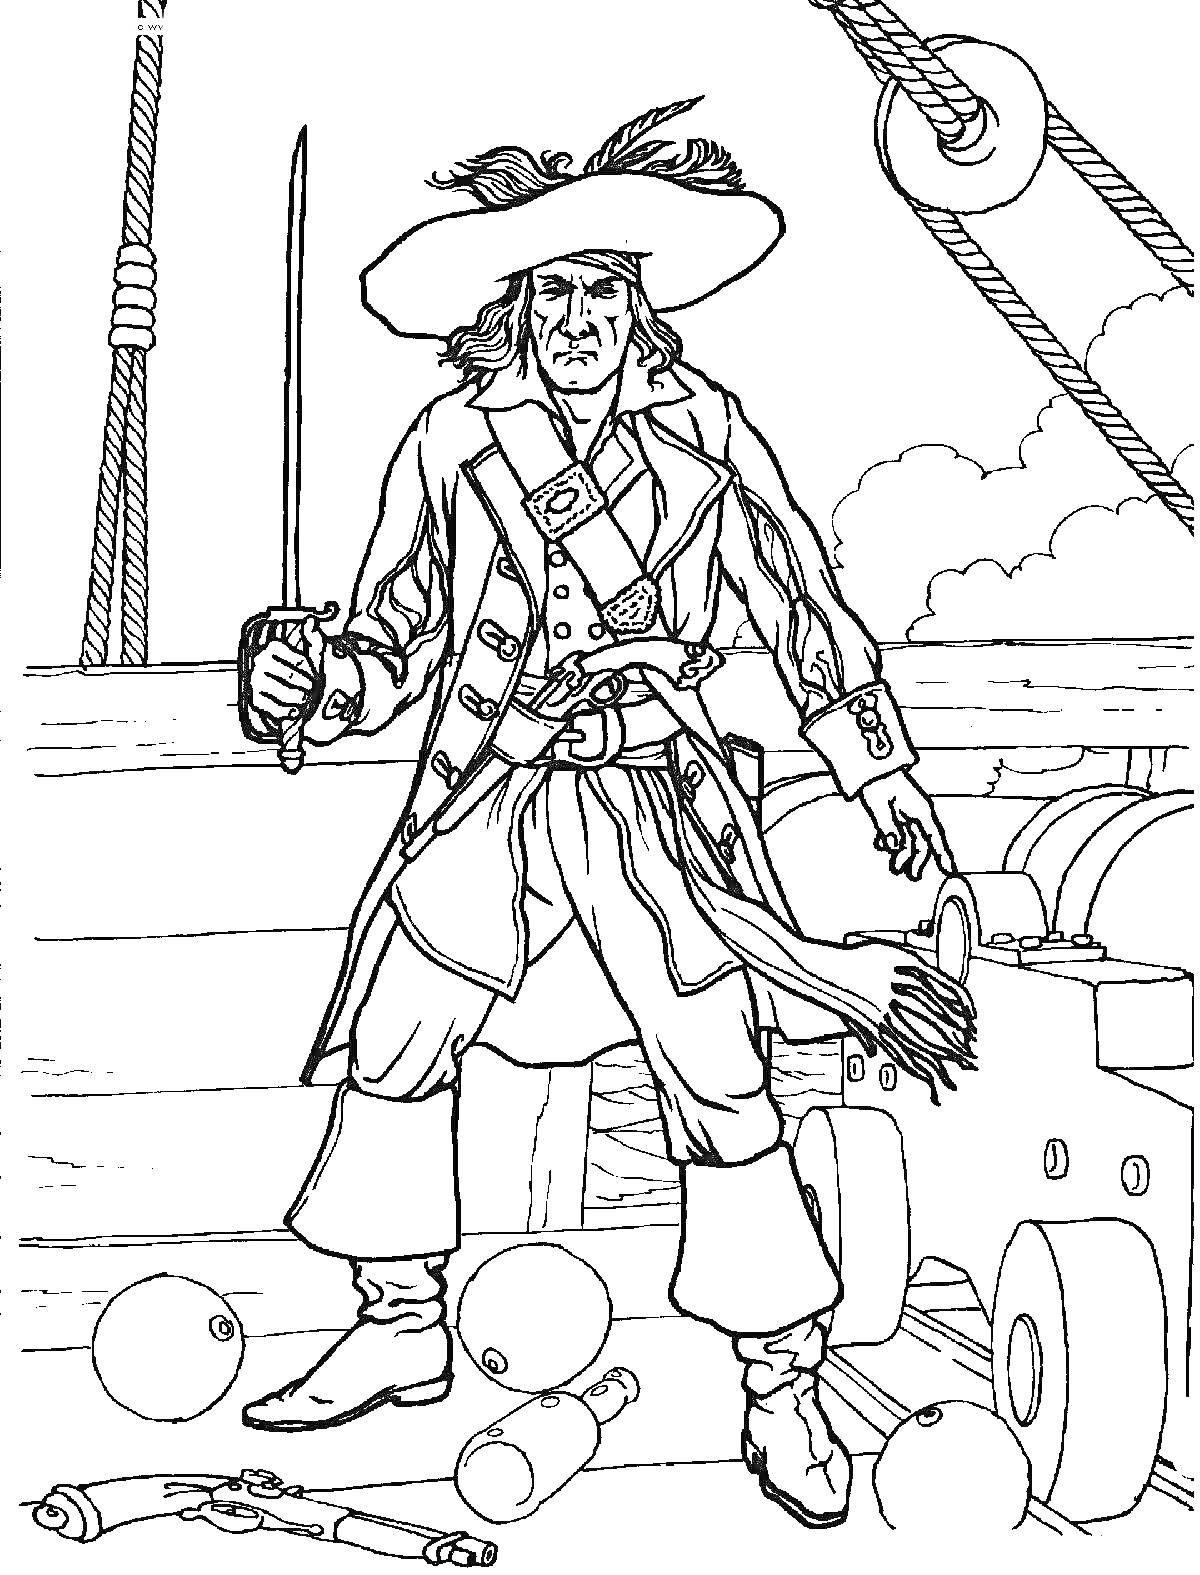 Пират на корабле с саблей, пушками, пушечными ядрами и канатами